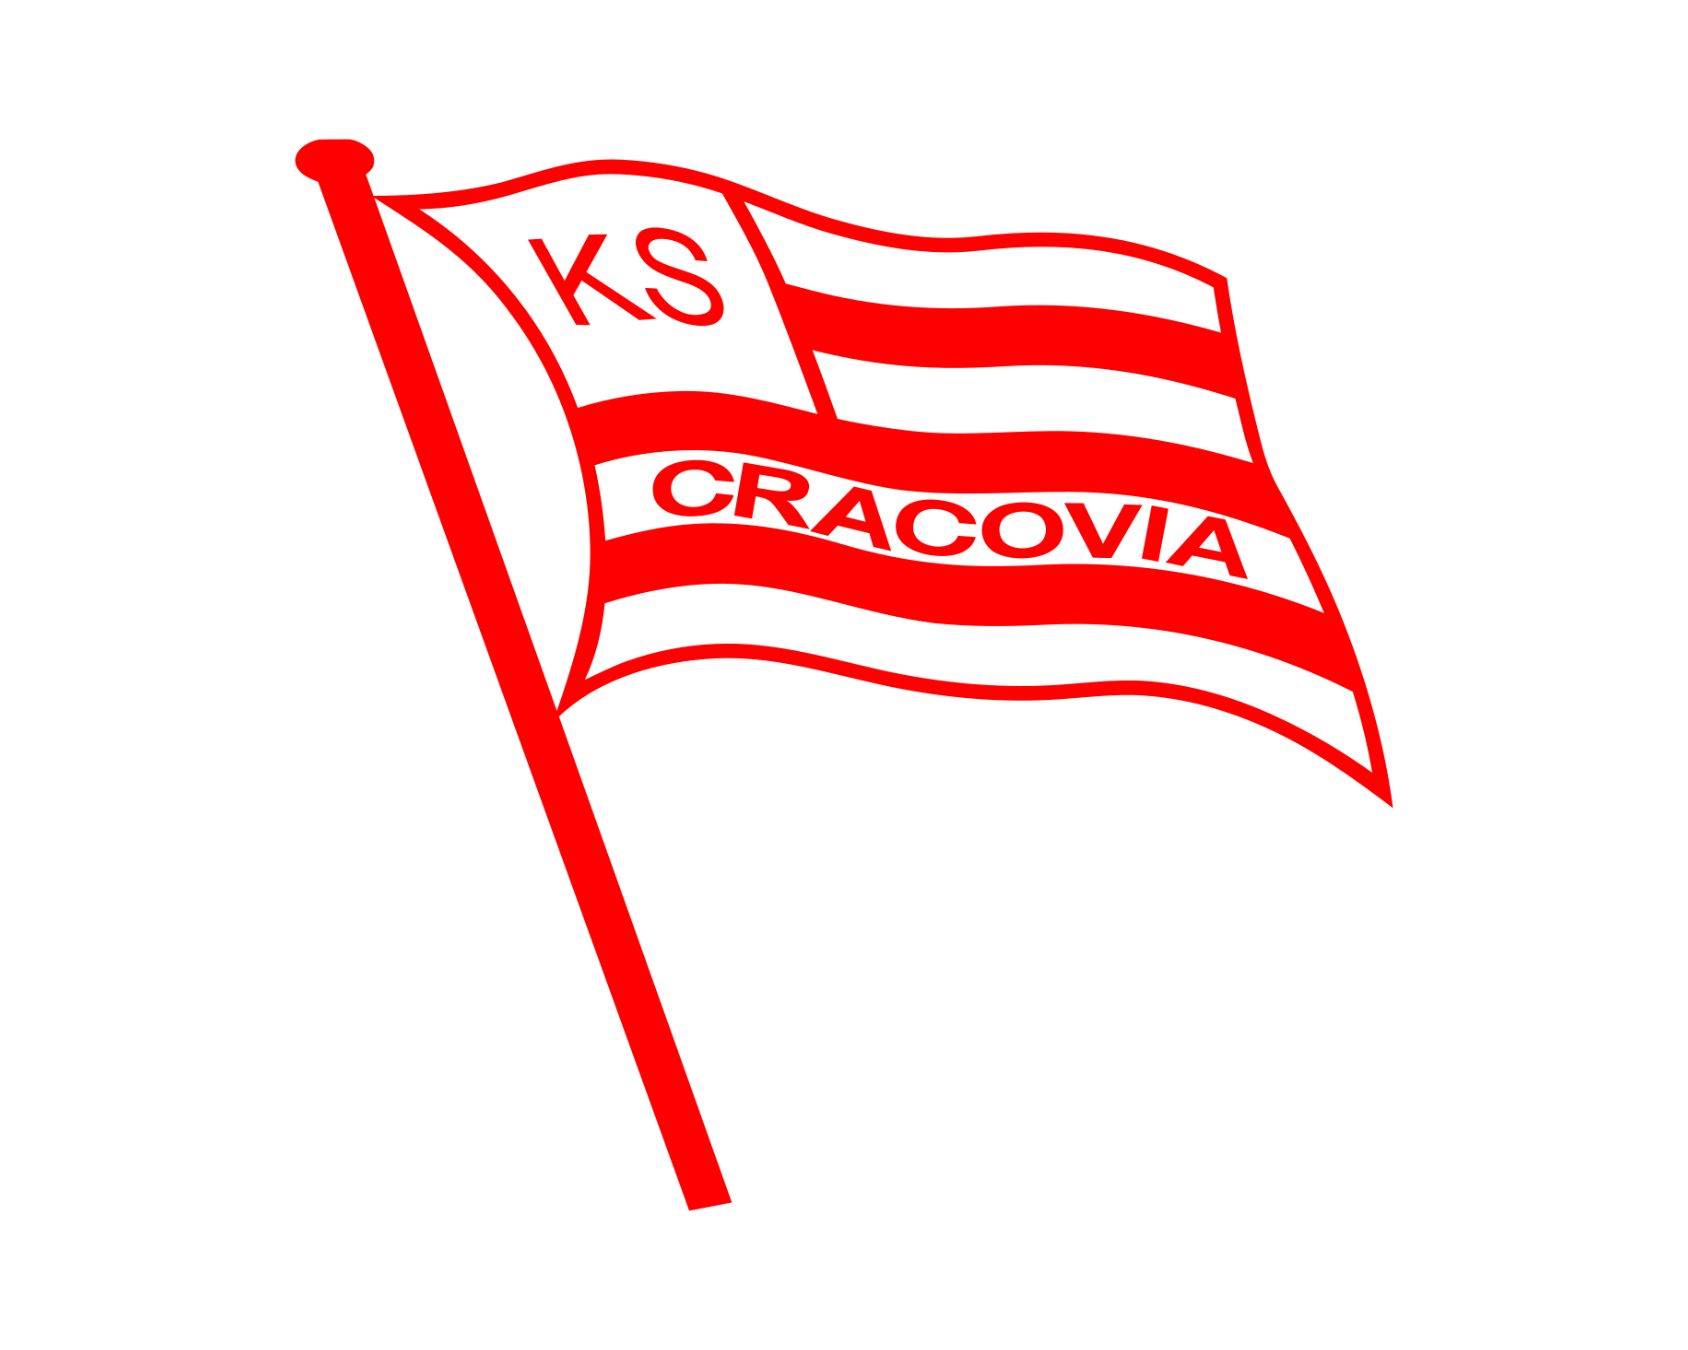 ks-cracovia-21-football-club-facts